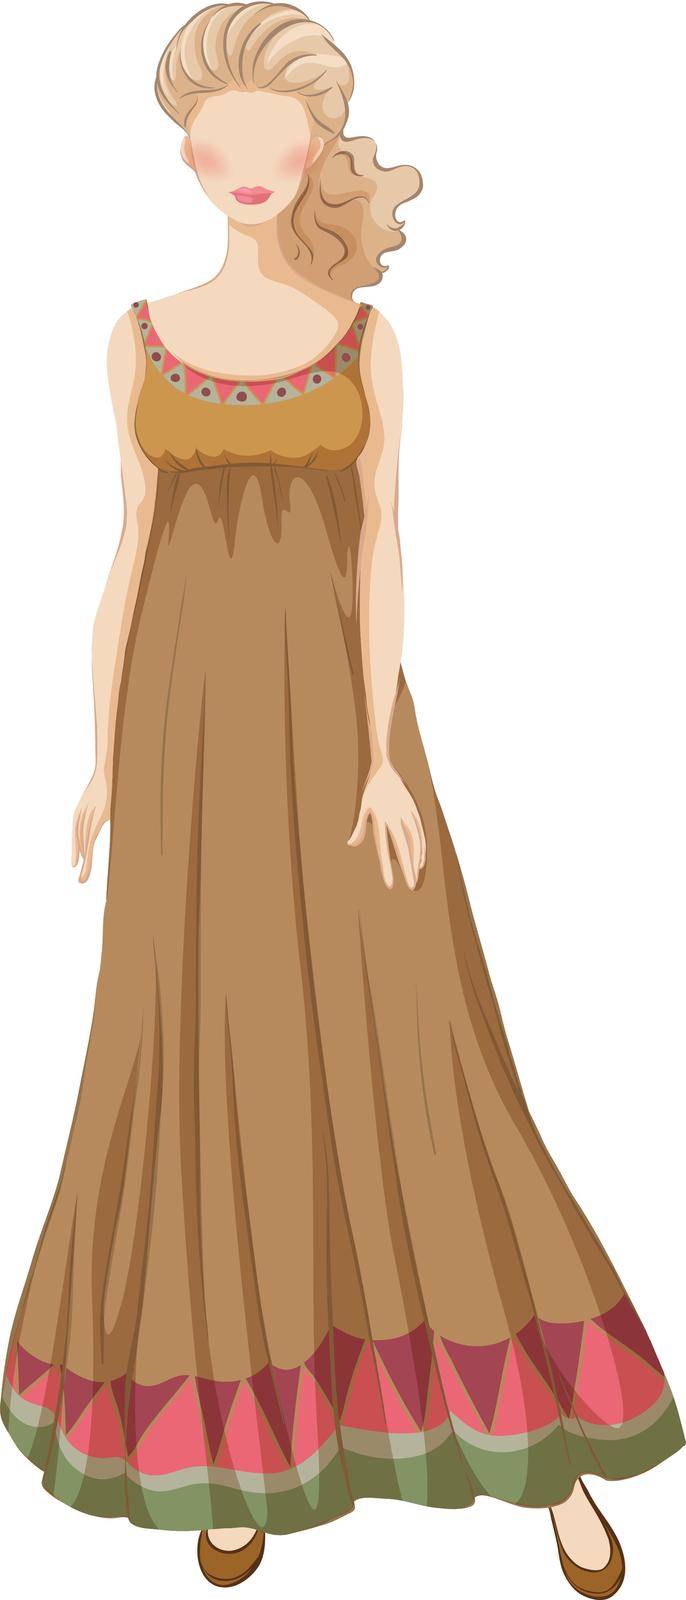 Female model wearing brown dress